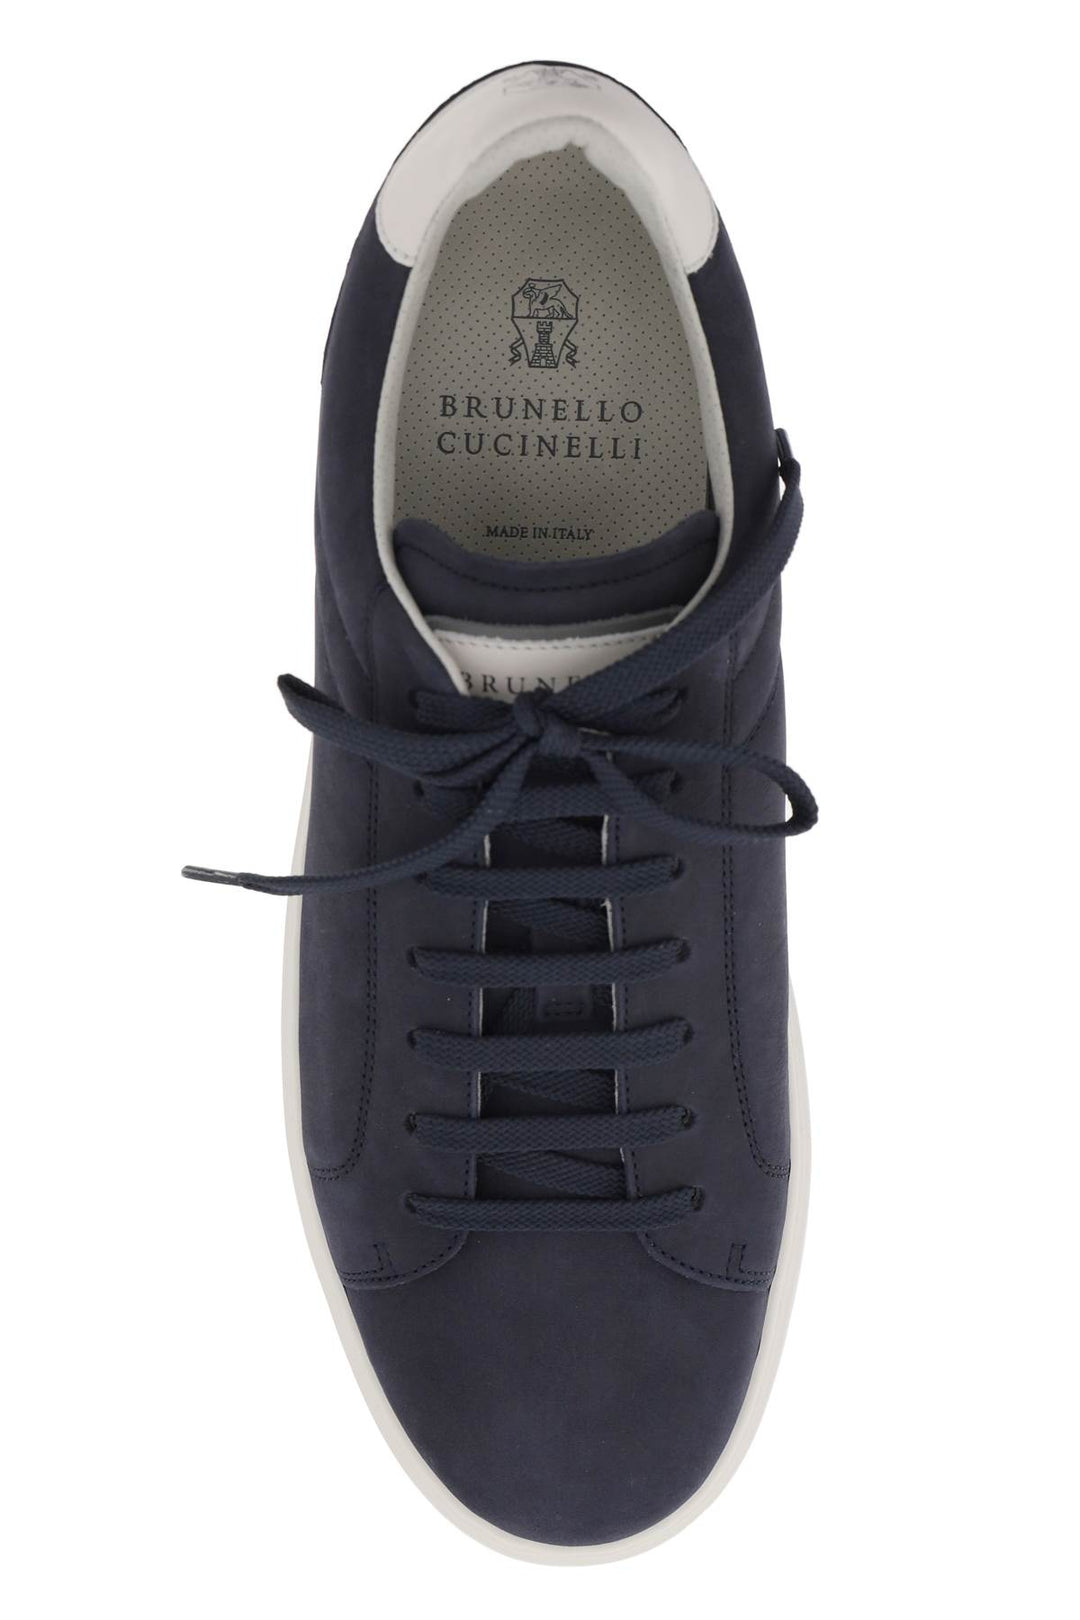 Brunello Cucinelli Nubuck Sneakers   Blue